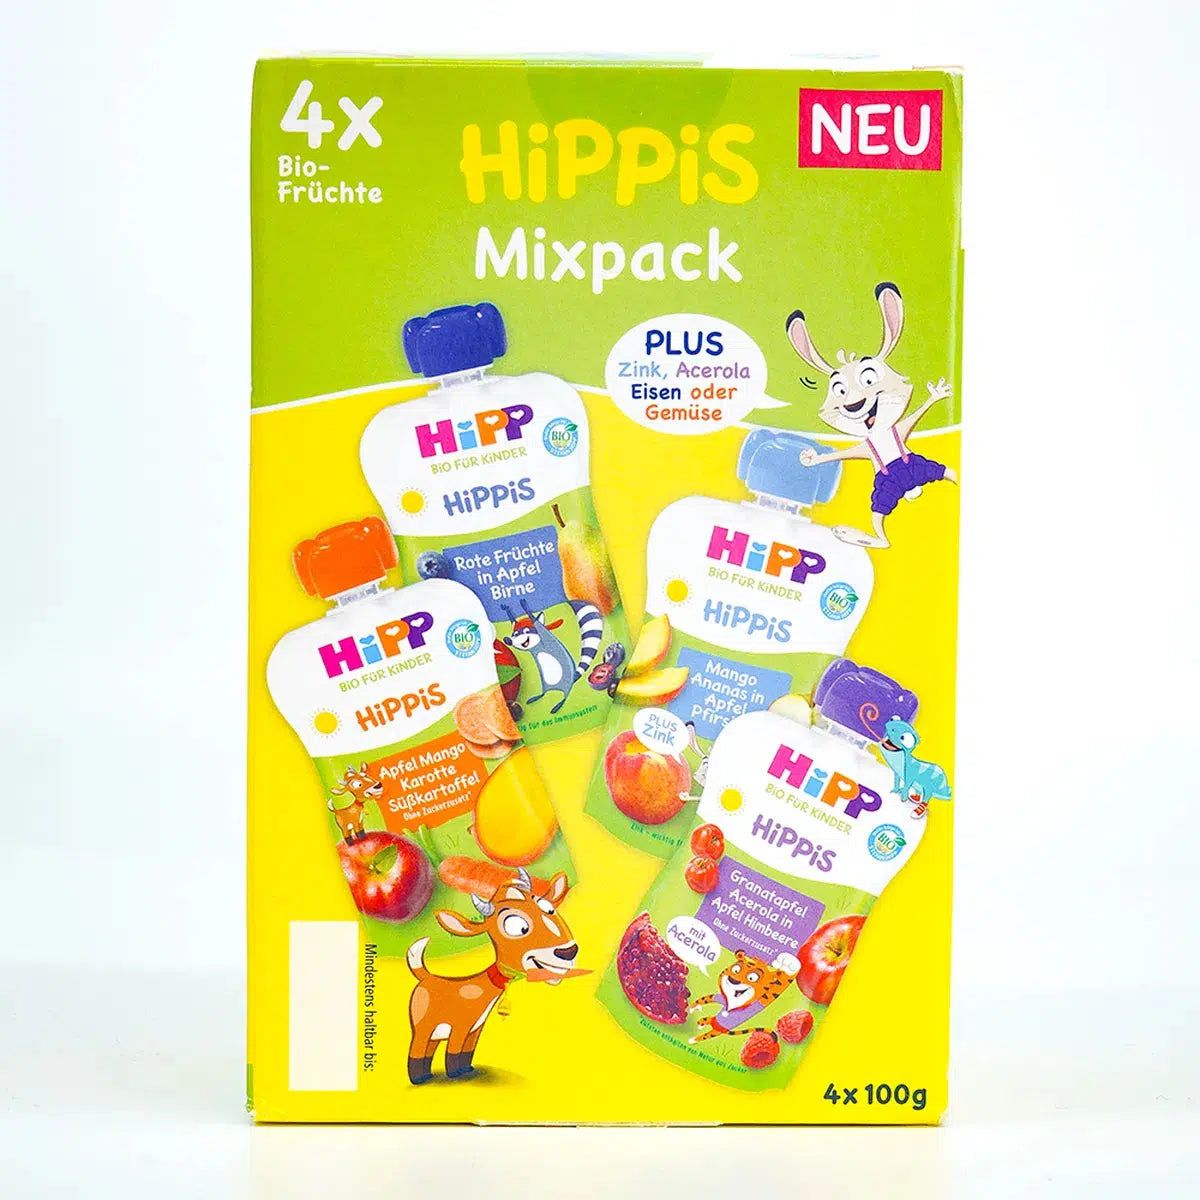 HiPP Fruit Pouches Hippis Mixpack - Box